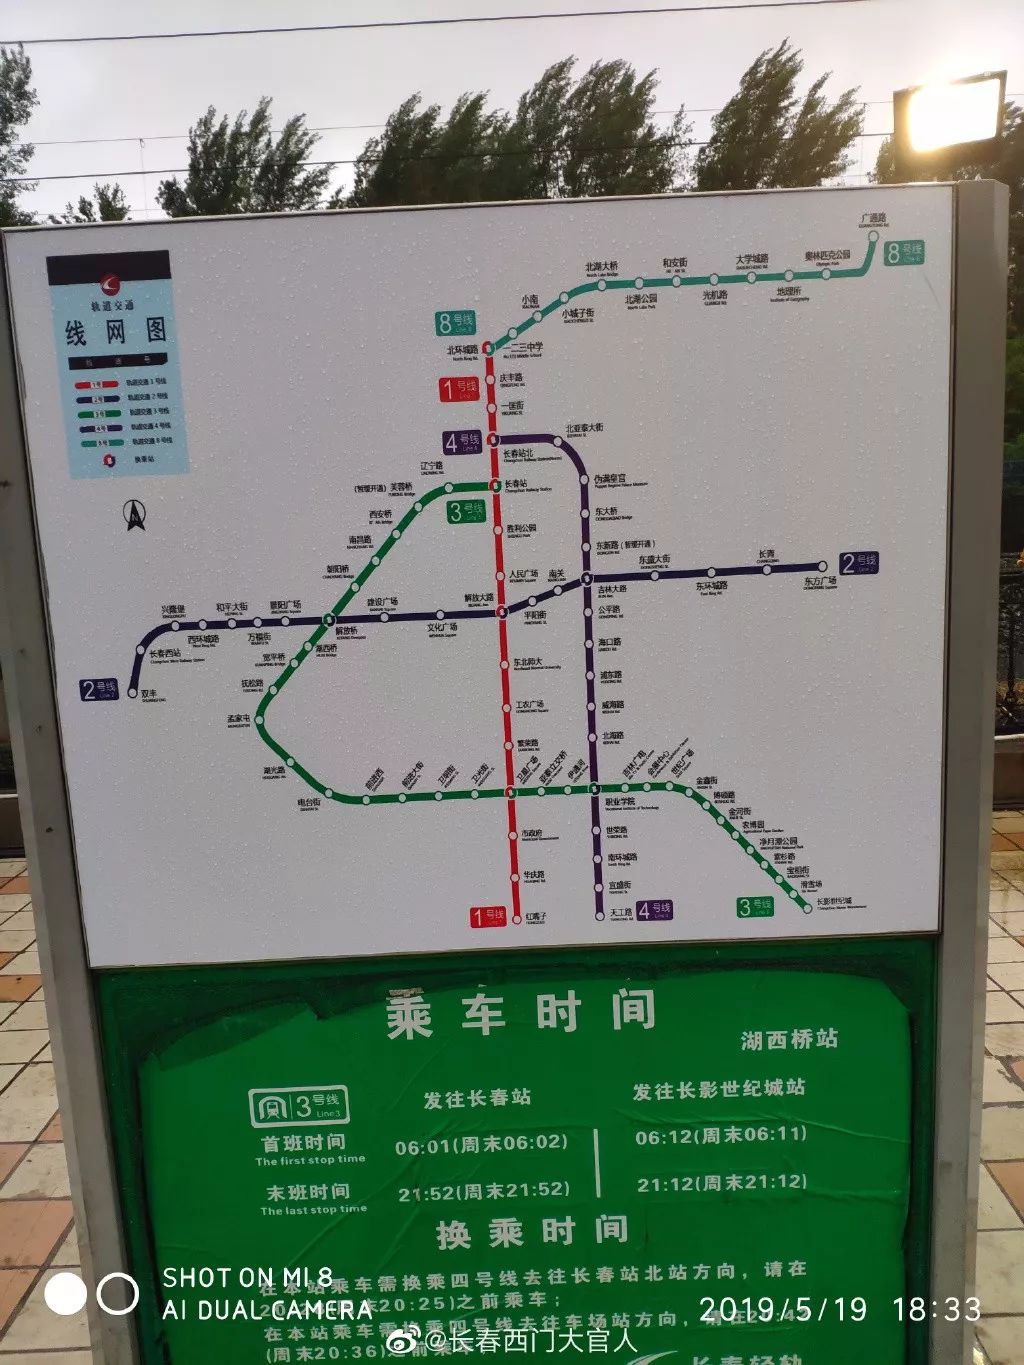 长春轻轨地铁可以换乘了5月30日起施行同网同价